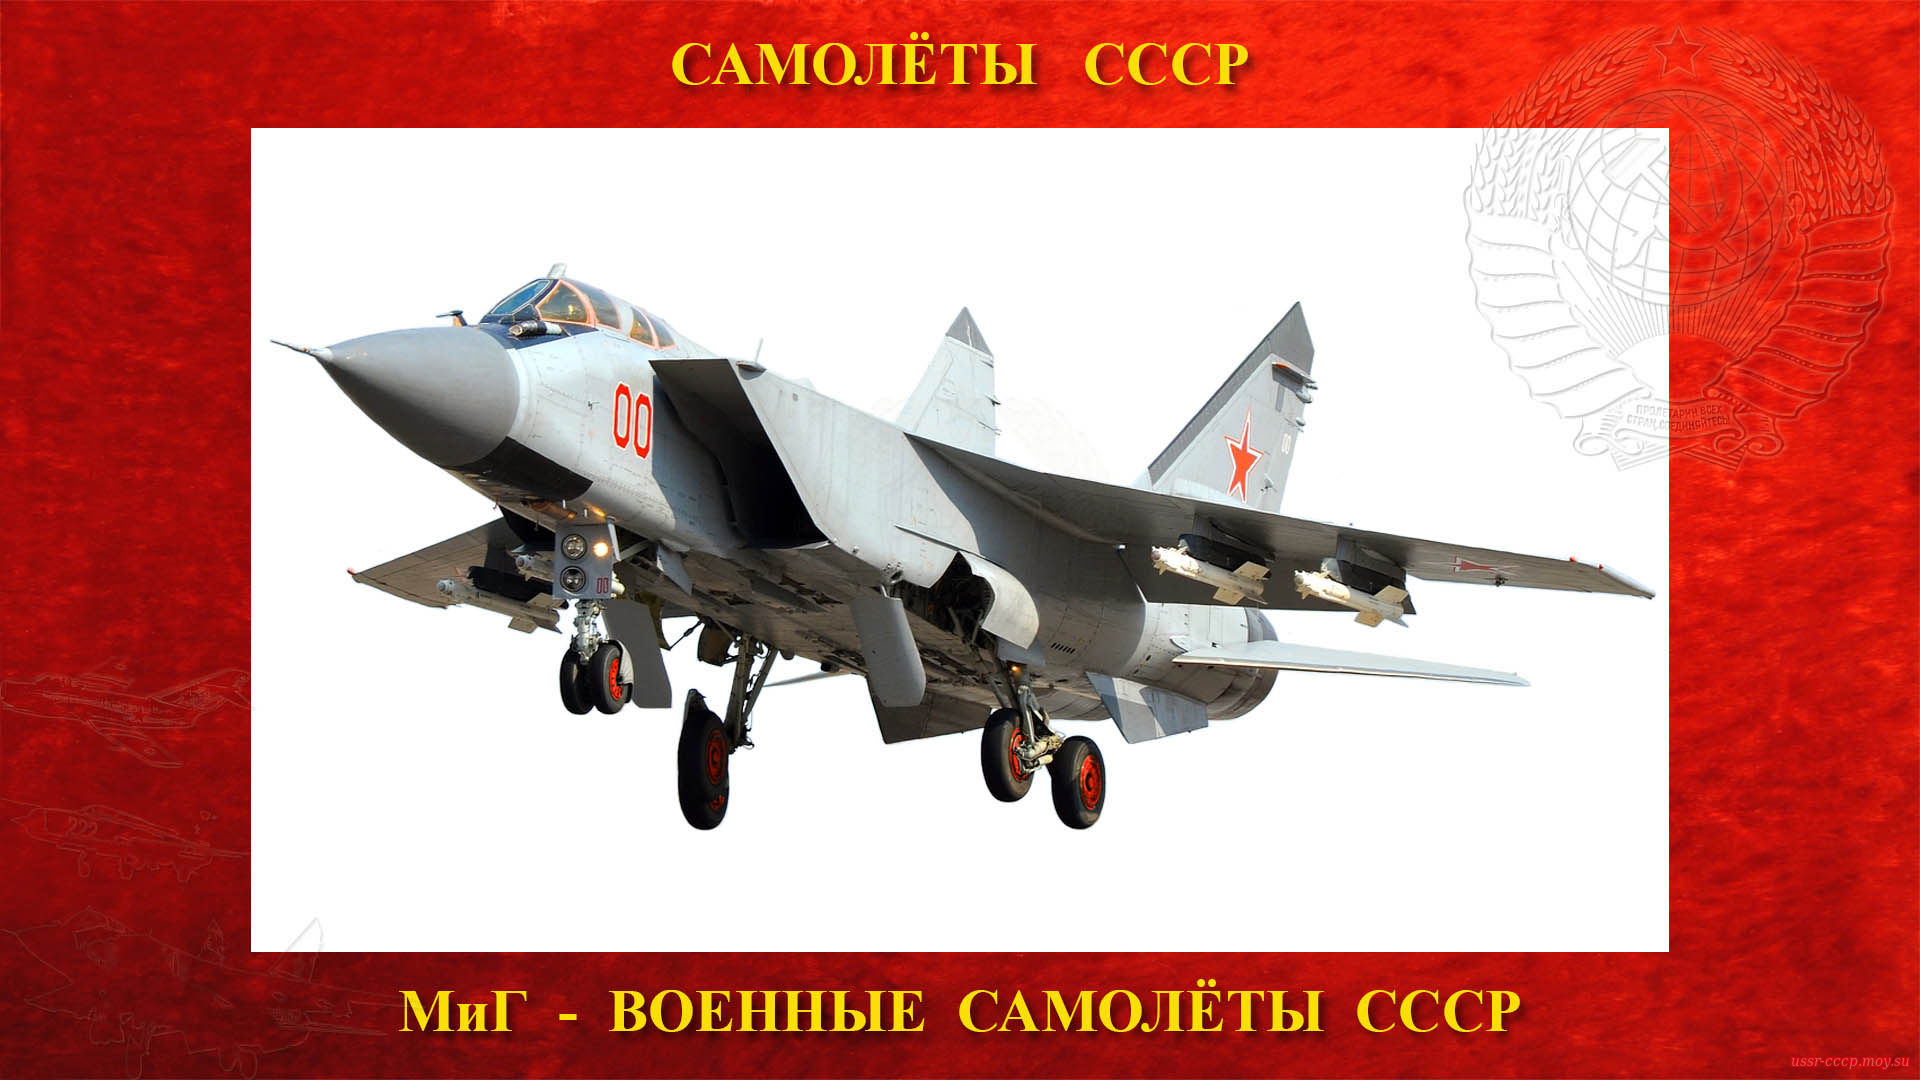 МиГ-31 — Советский двухместный сверхзвуковой высотный всепогодный истребитель-перехватчик дальнего радиуса действия (16.09.1975)